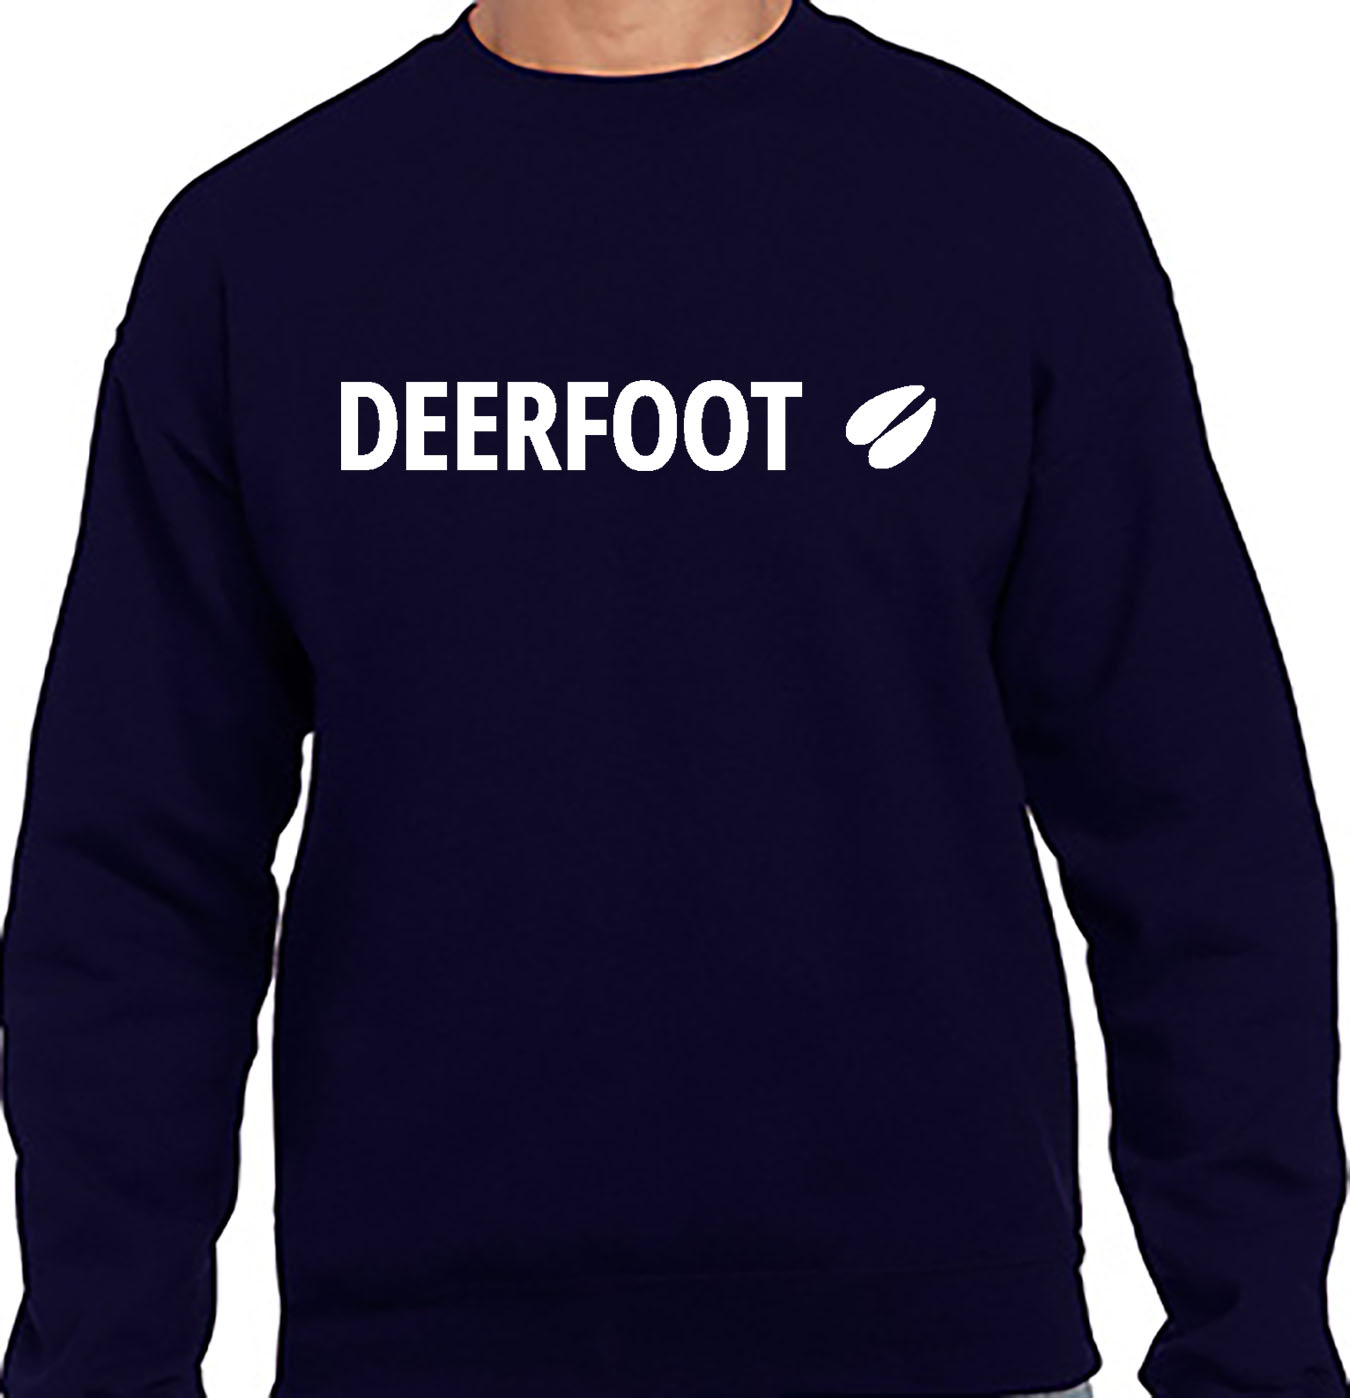 Deerfoot Logo on Navy Crew